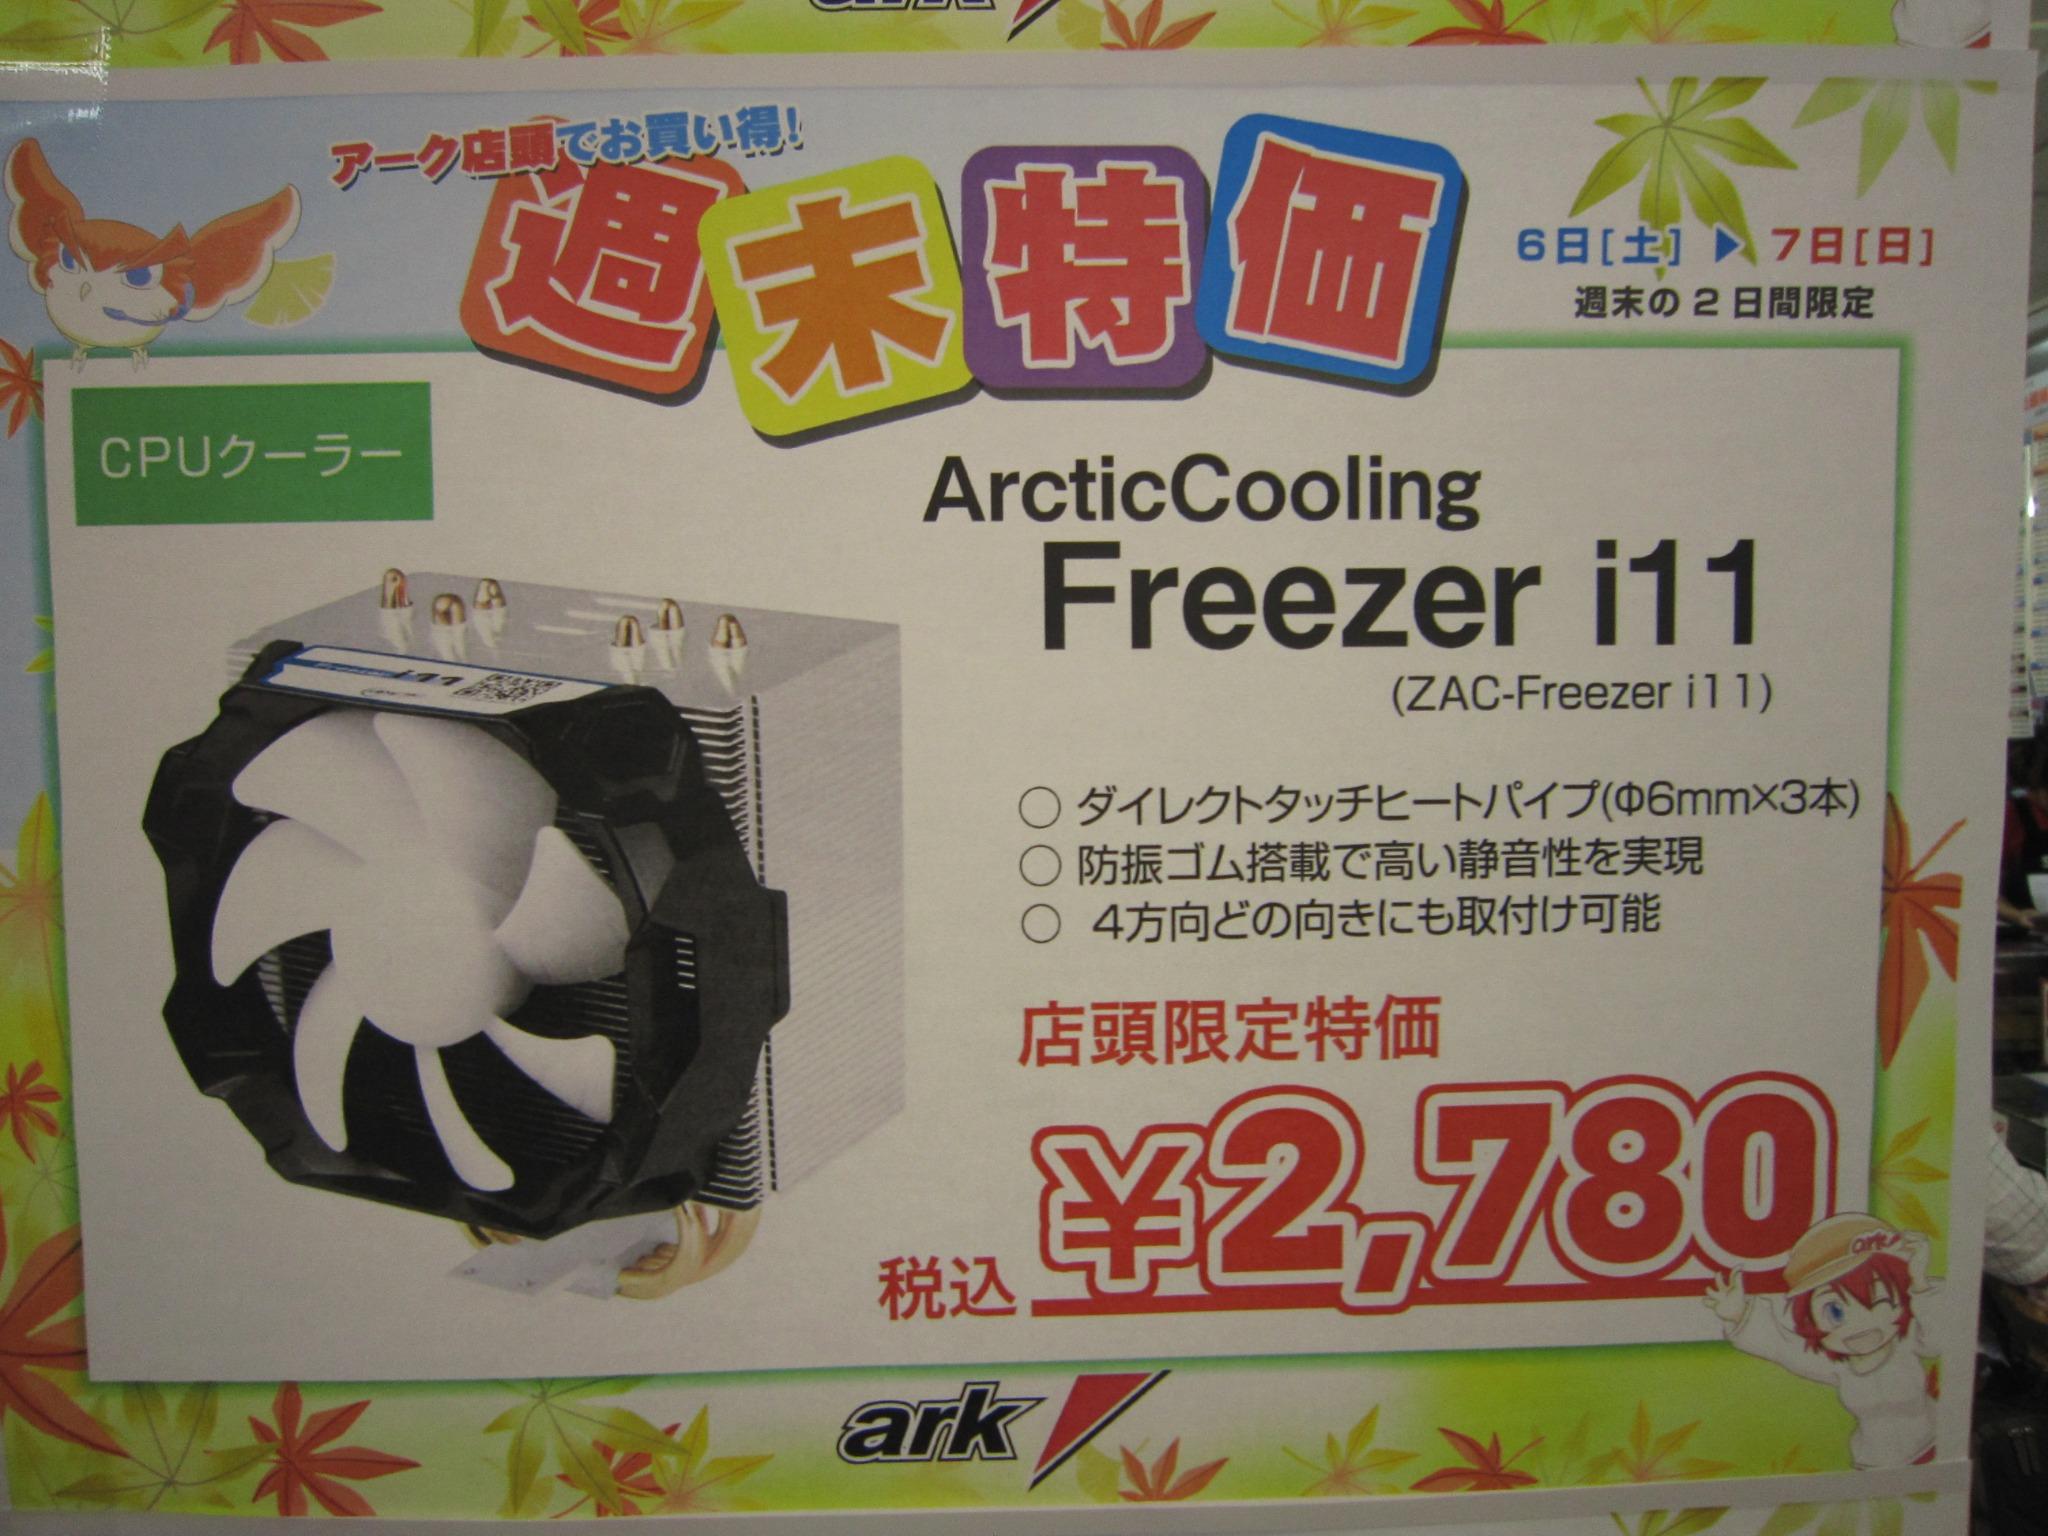 パソコンショップアーク 店舗週末特価 ダイレクトタッチヒートパイプのサイドフロー型で4方向どの向きにも取付け可能なcpuクーラー Arcticcooling Freezer I11 を 2 780にて販売中 Http T Co Wka11em2fu